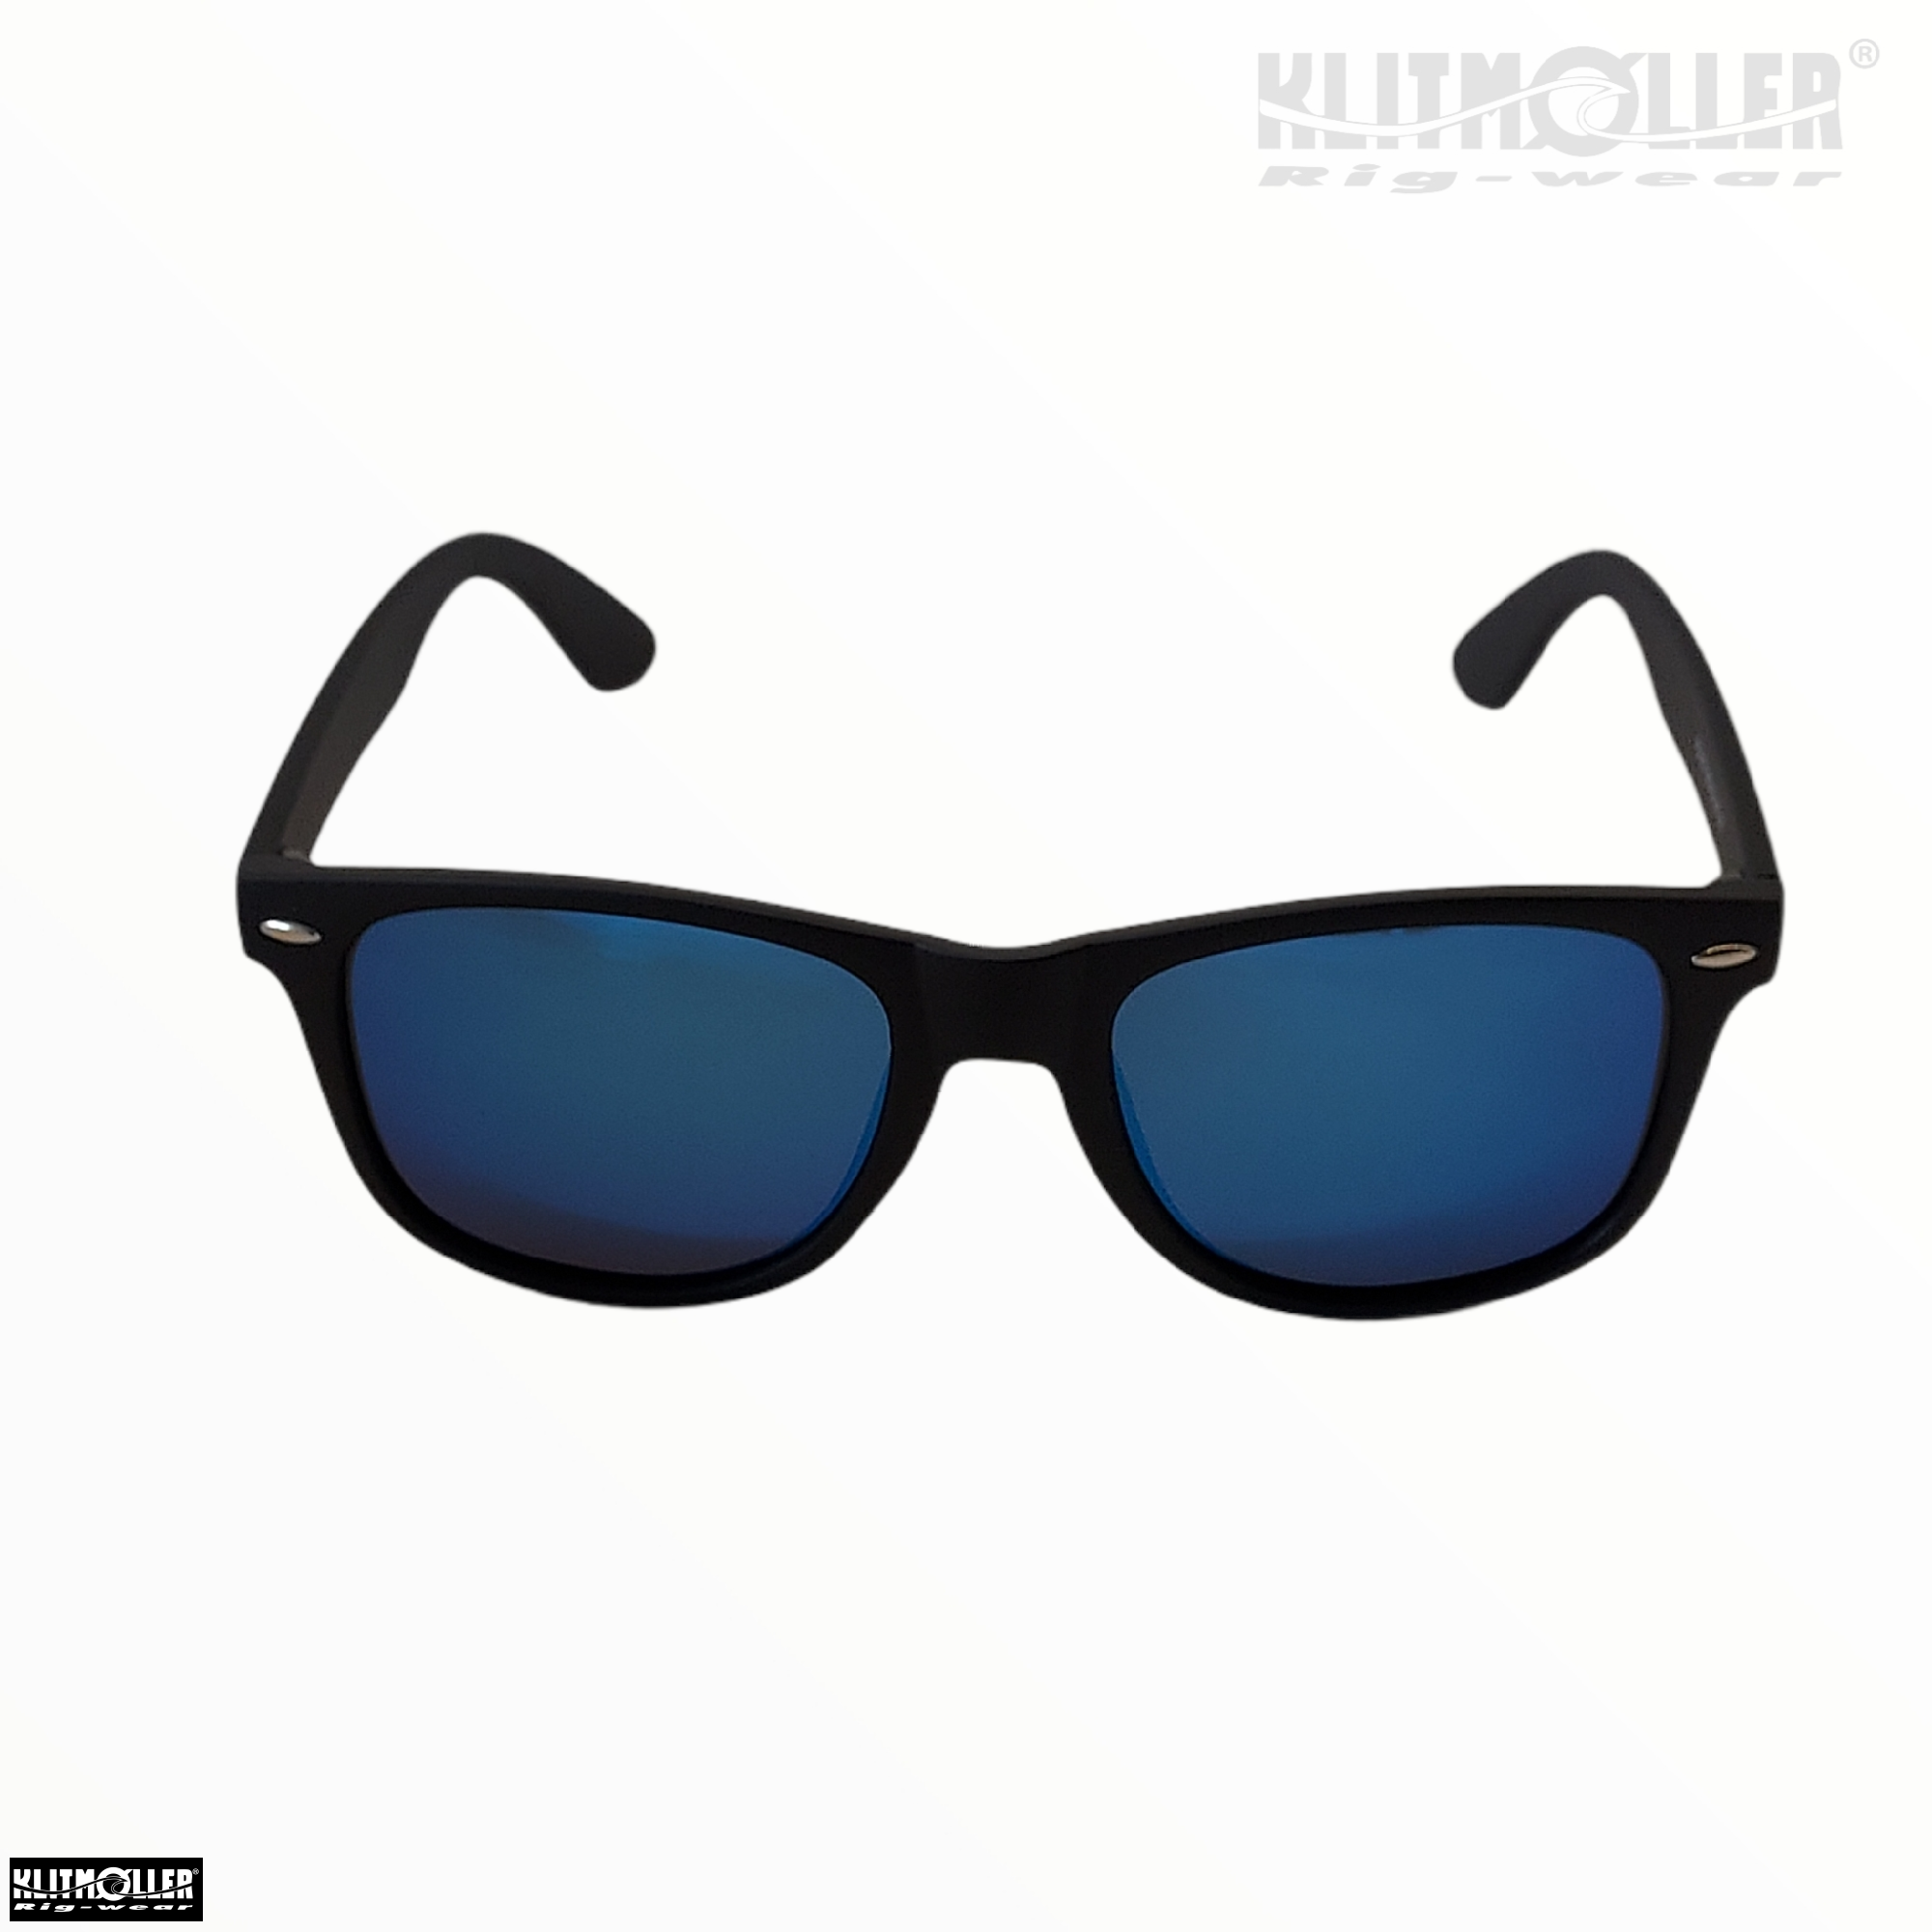 en Stien Afgang til Klitmøller solbriller: HarX Sport - Solbriller - Klitmøller Rig Wear